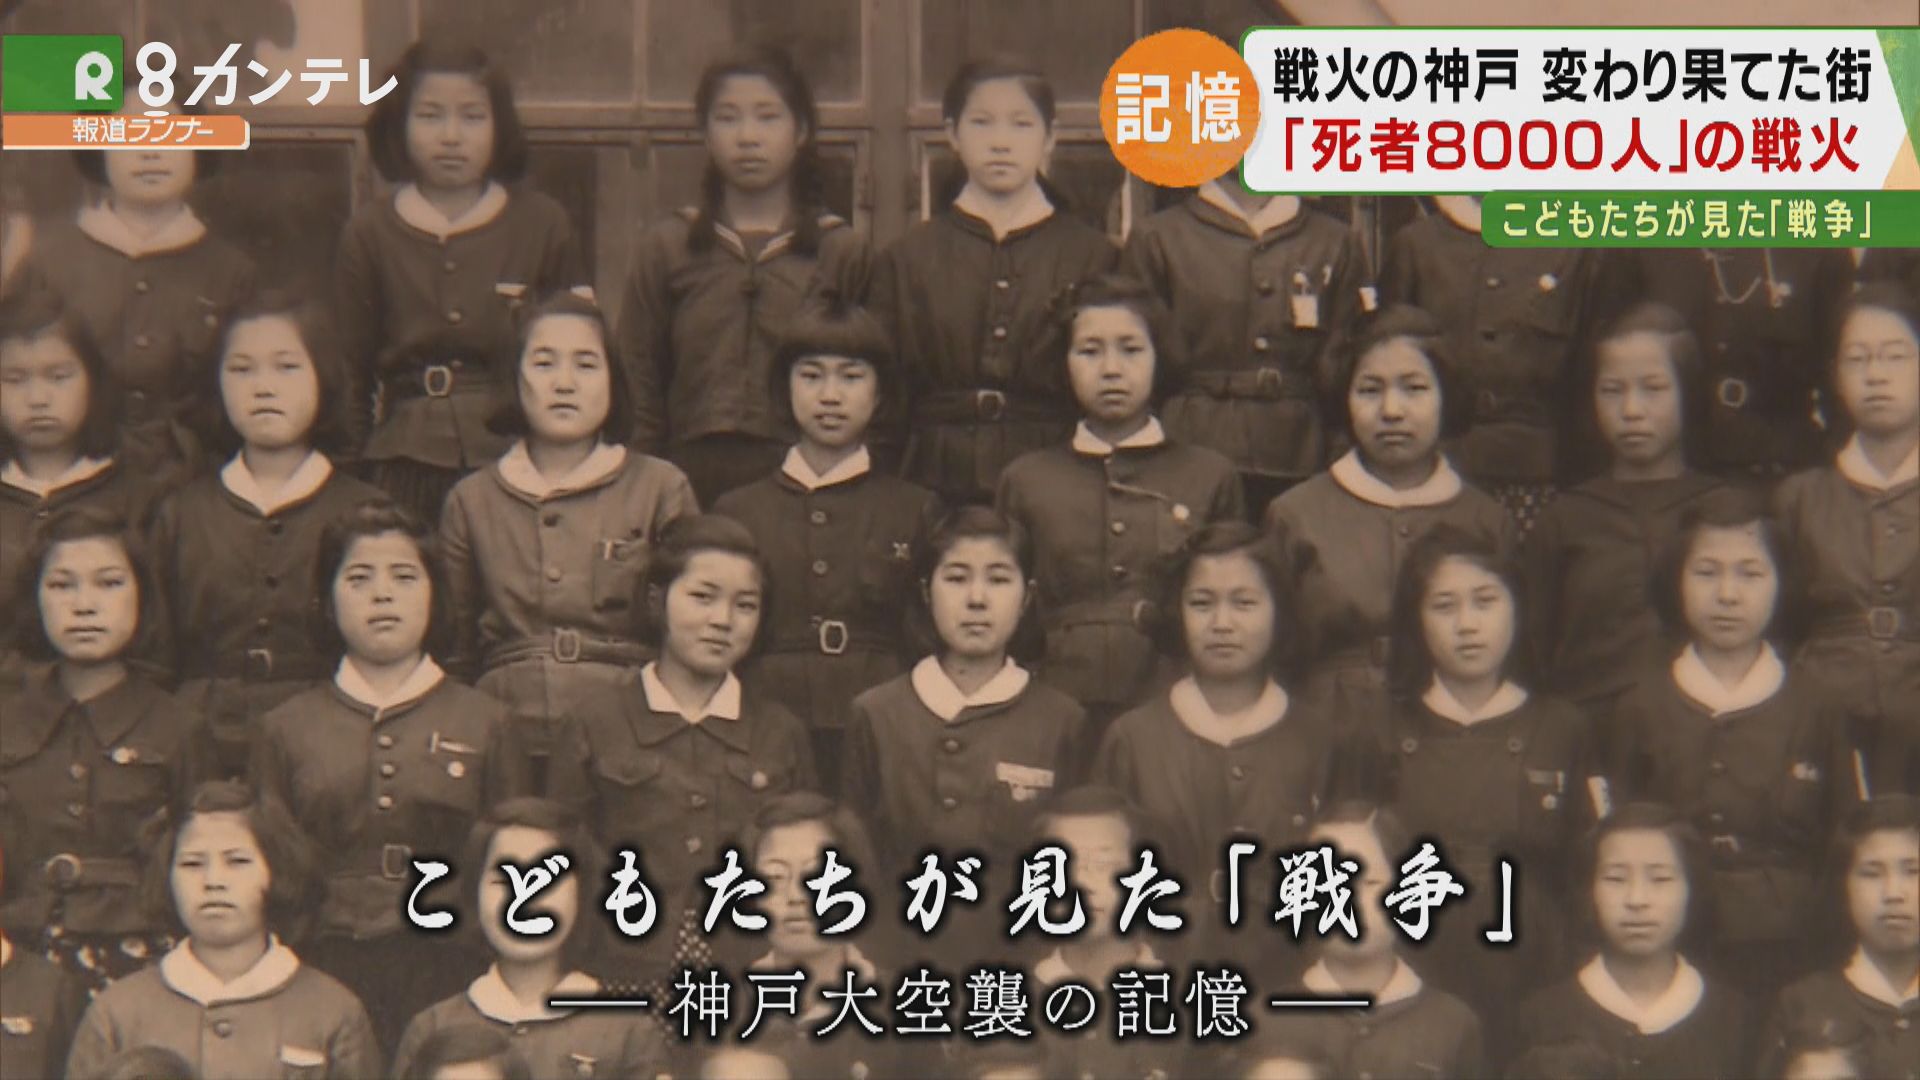 特集 戦火を逃げまどった 子供たち の記憶 死者8000人の神戸大空襲 特集 報道ランナー ニュース 関西テレビ放送 カンテレ